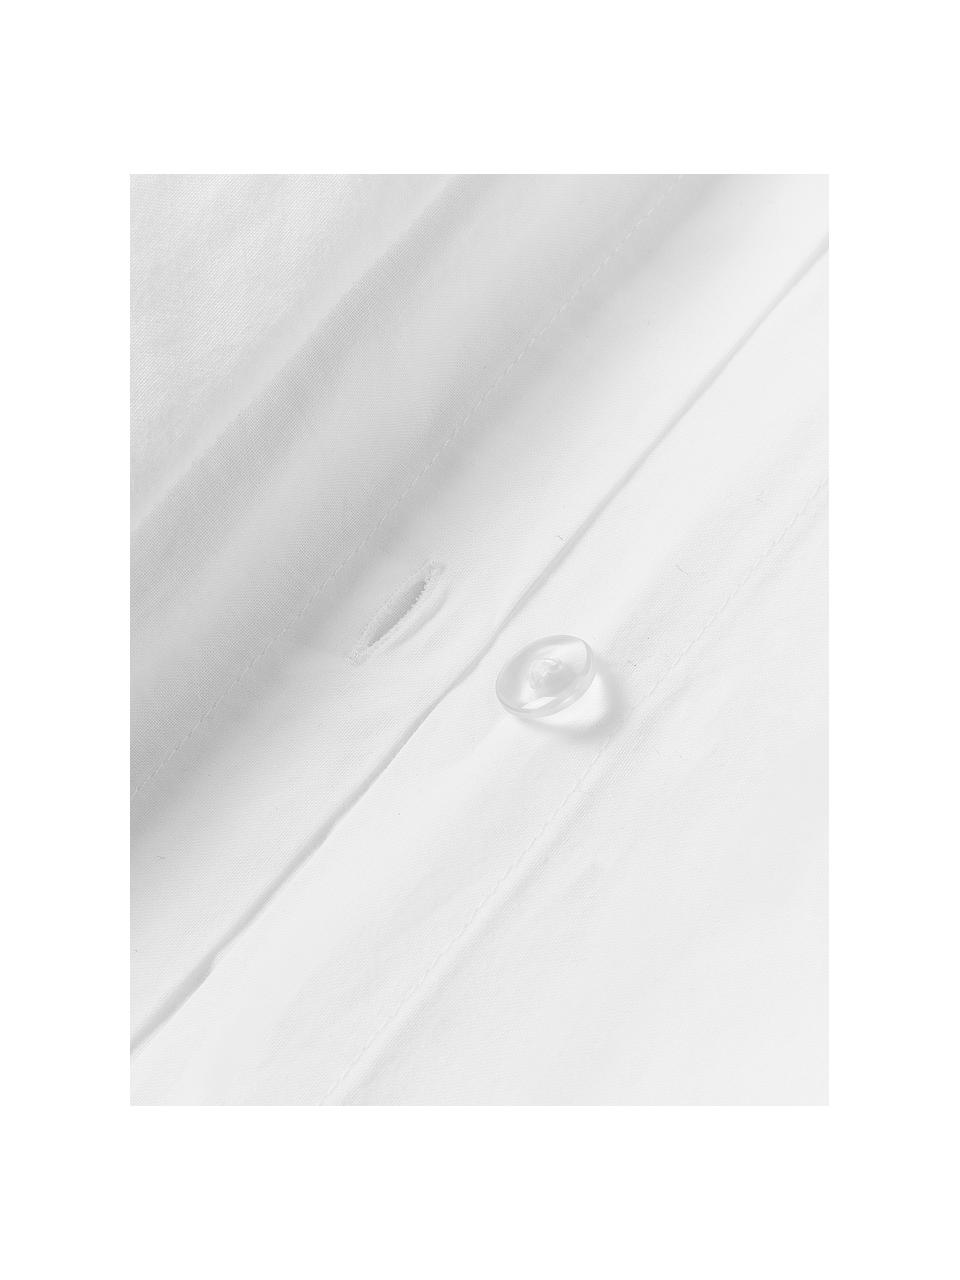 Funda de almohada de algodón texturizado con dobladillo Elinor, Reverso: tejido renforcé Densidad , Blanco, An 45 x L 110 cm